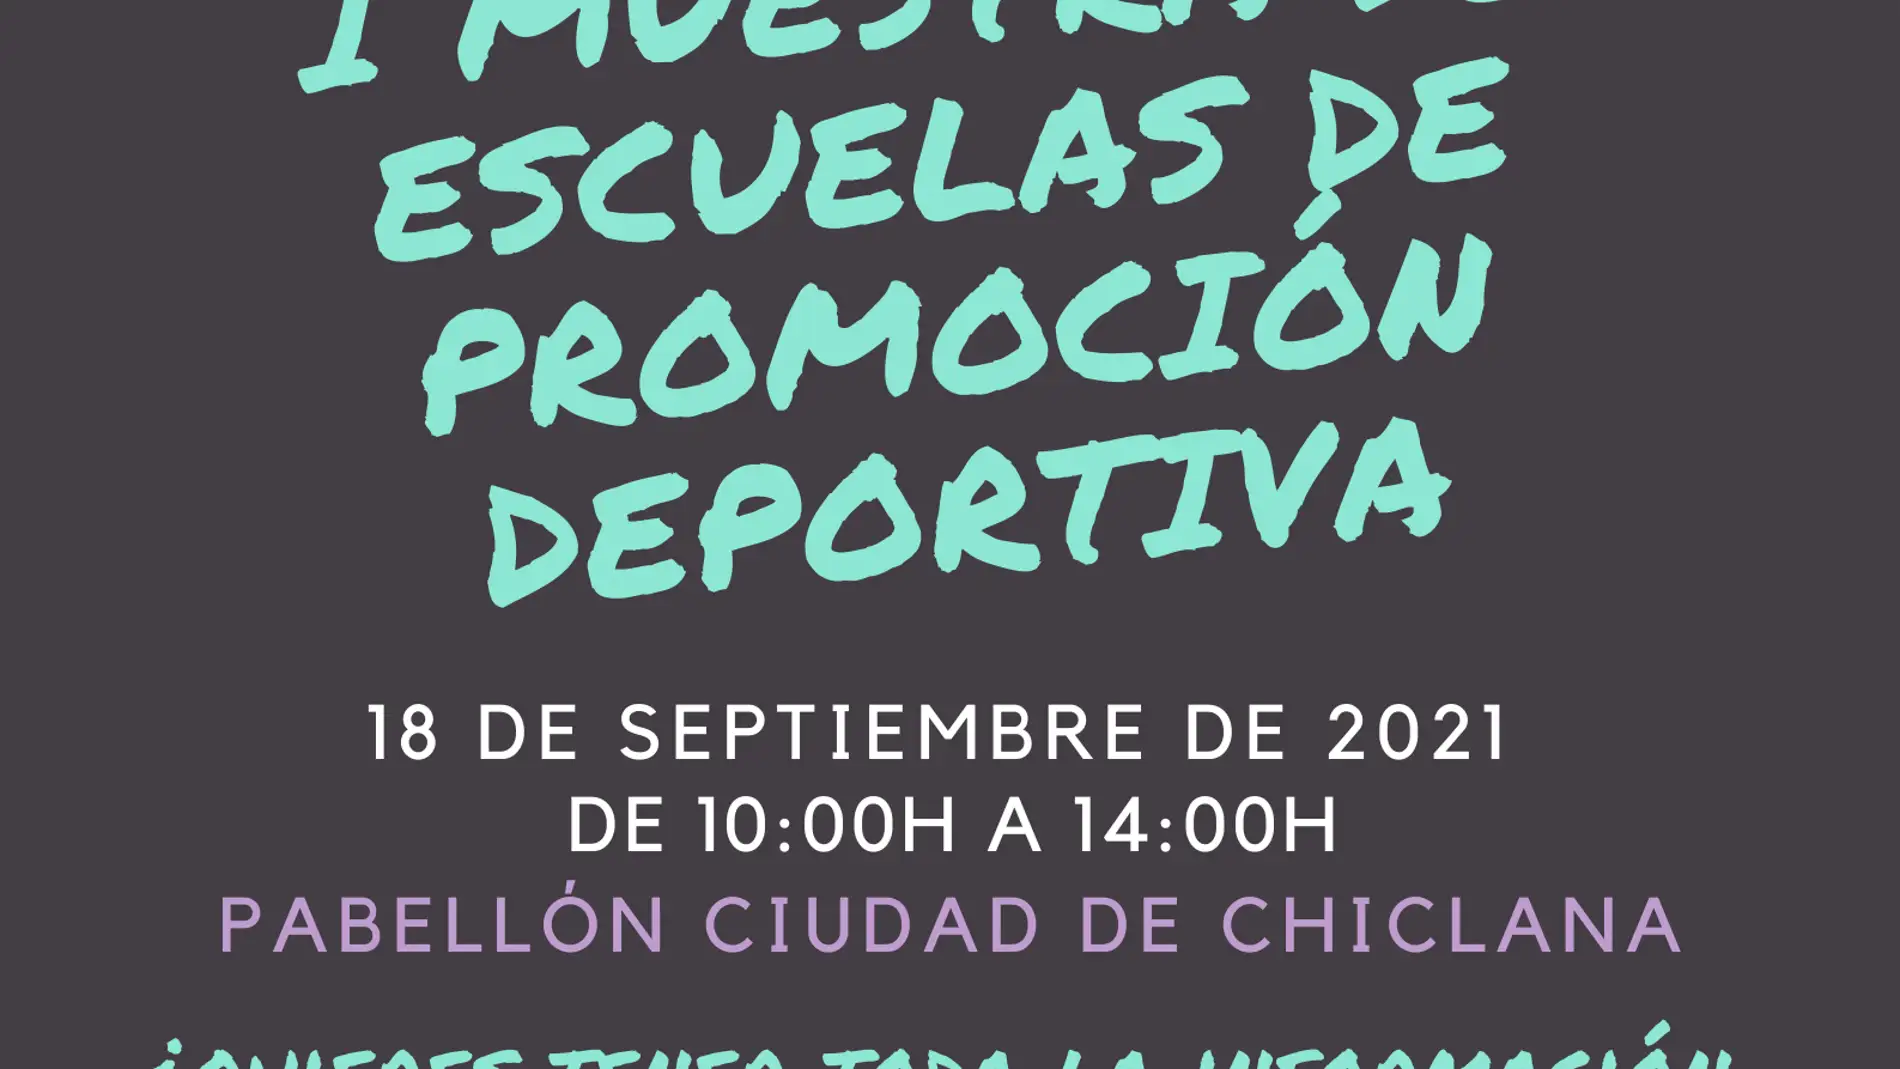 Cartel del evento que se celebrará en Chiclana